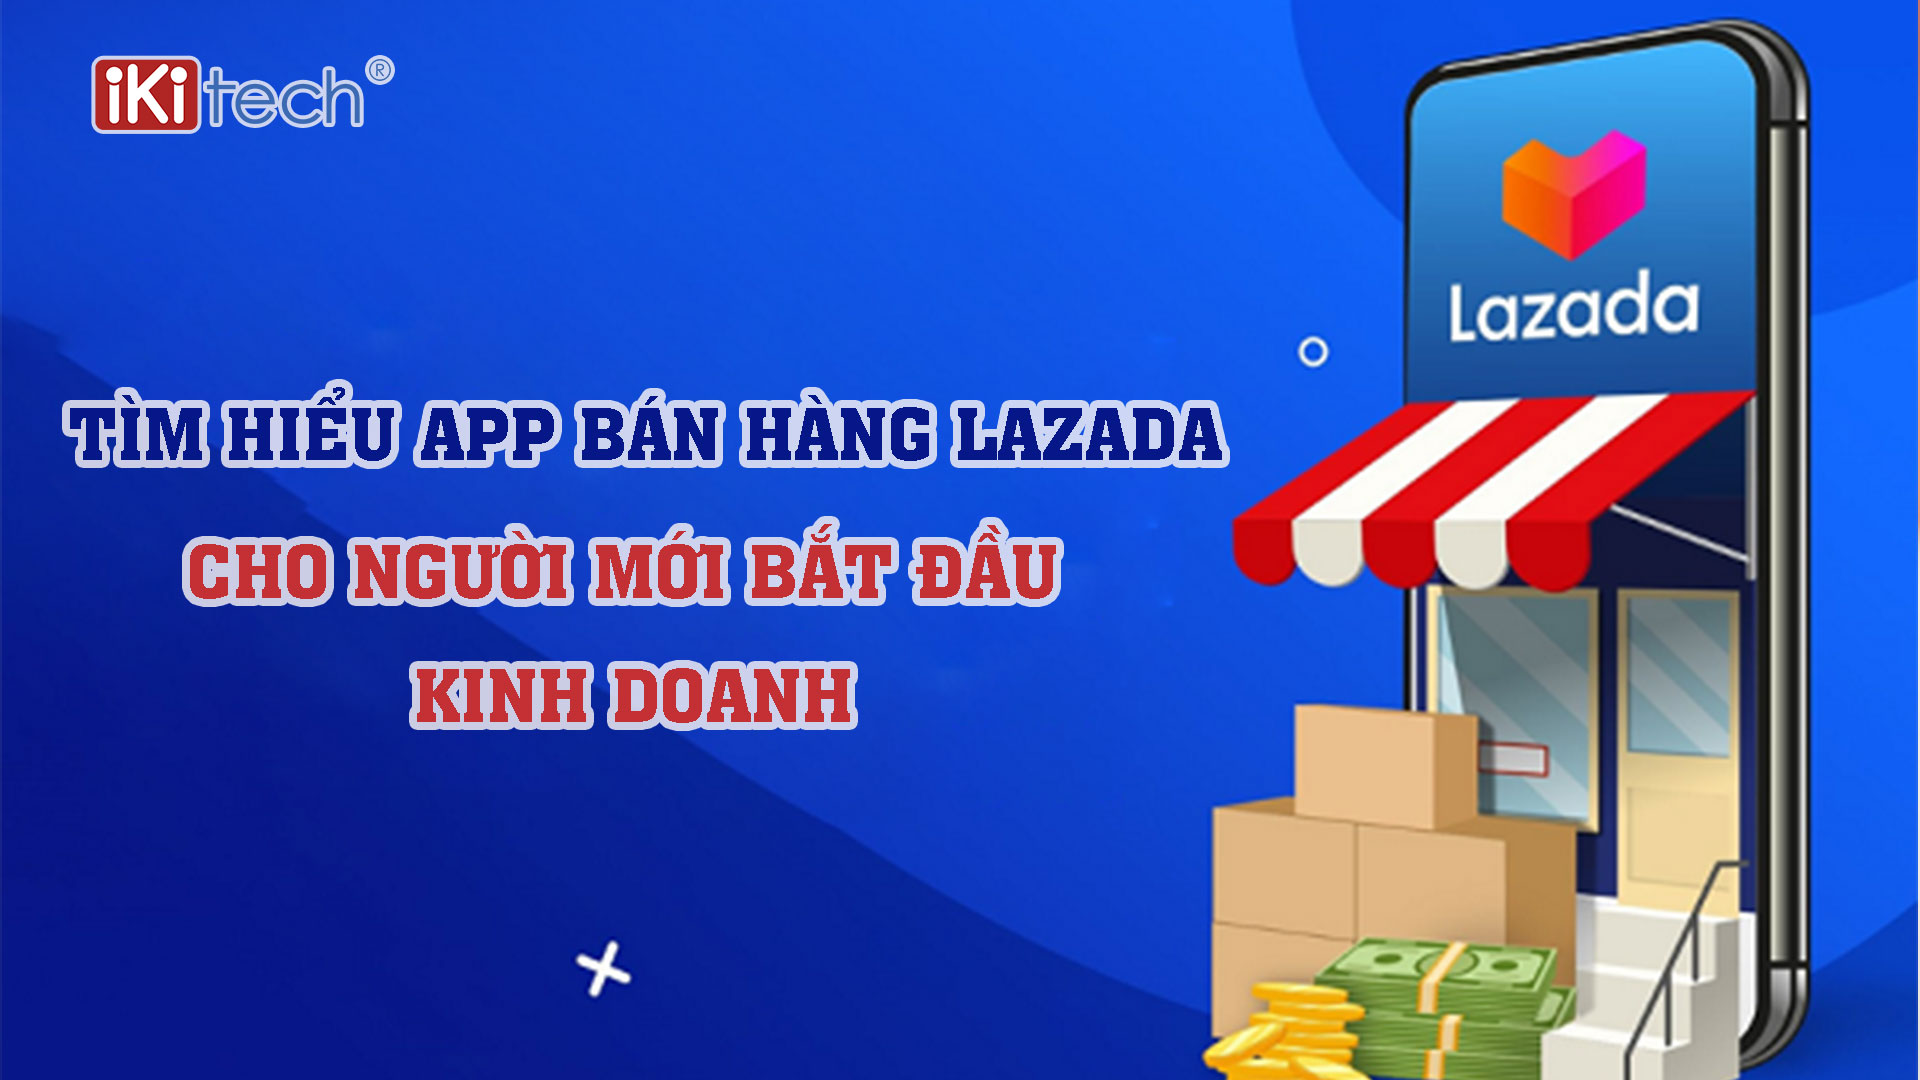 Tìm hiểu app bán hàng Lazada cho người mới bắt đầu kinh doanh